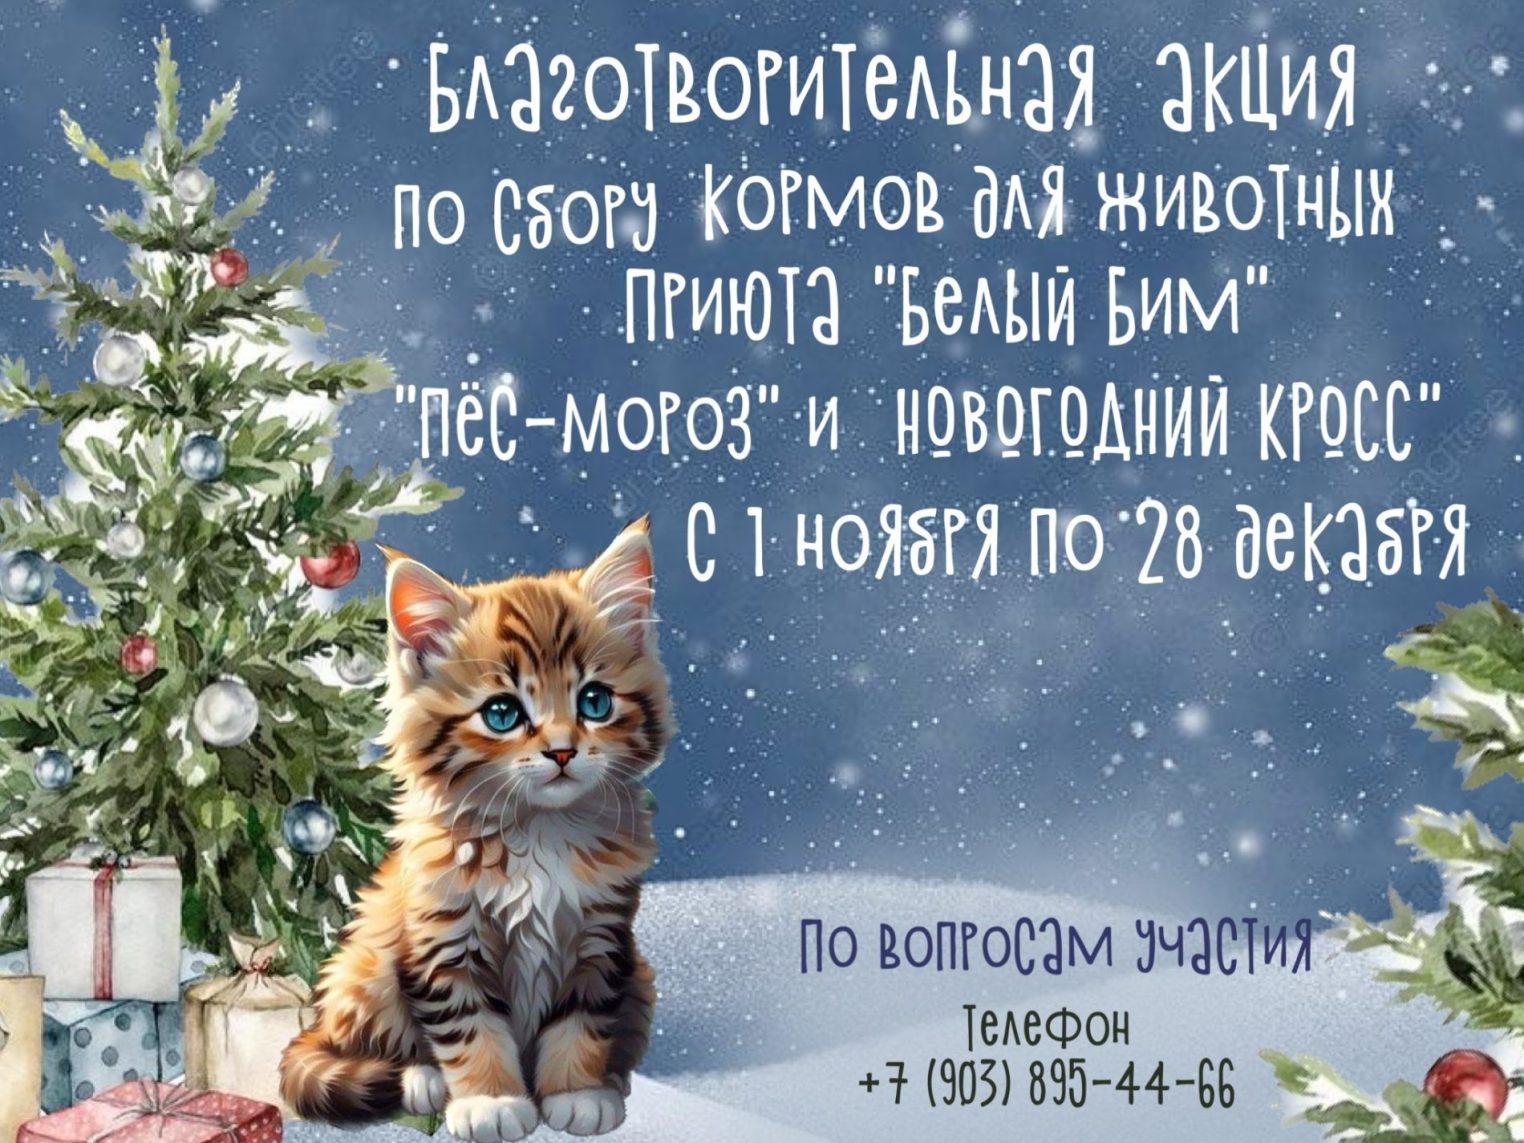 Добрая акция «Пес Мороз и новогодний кросс» стартовала в Костроме